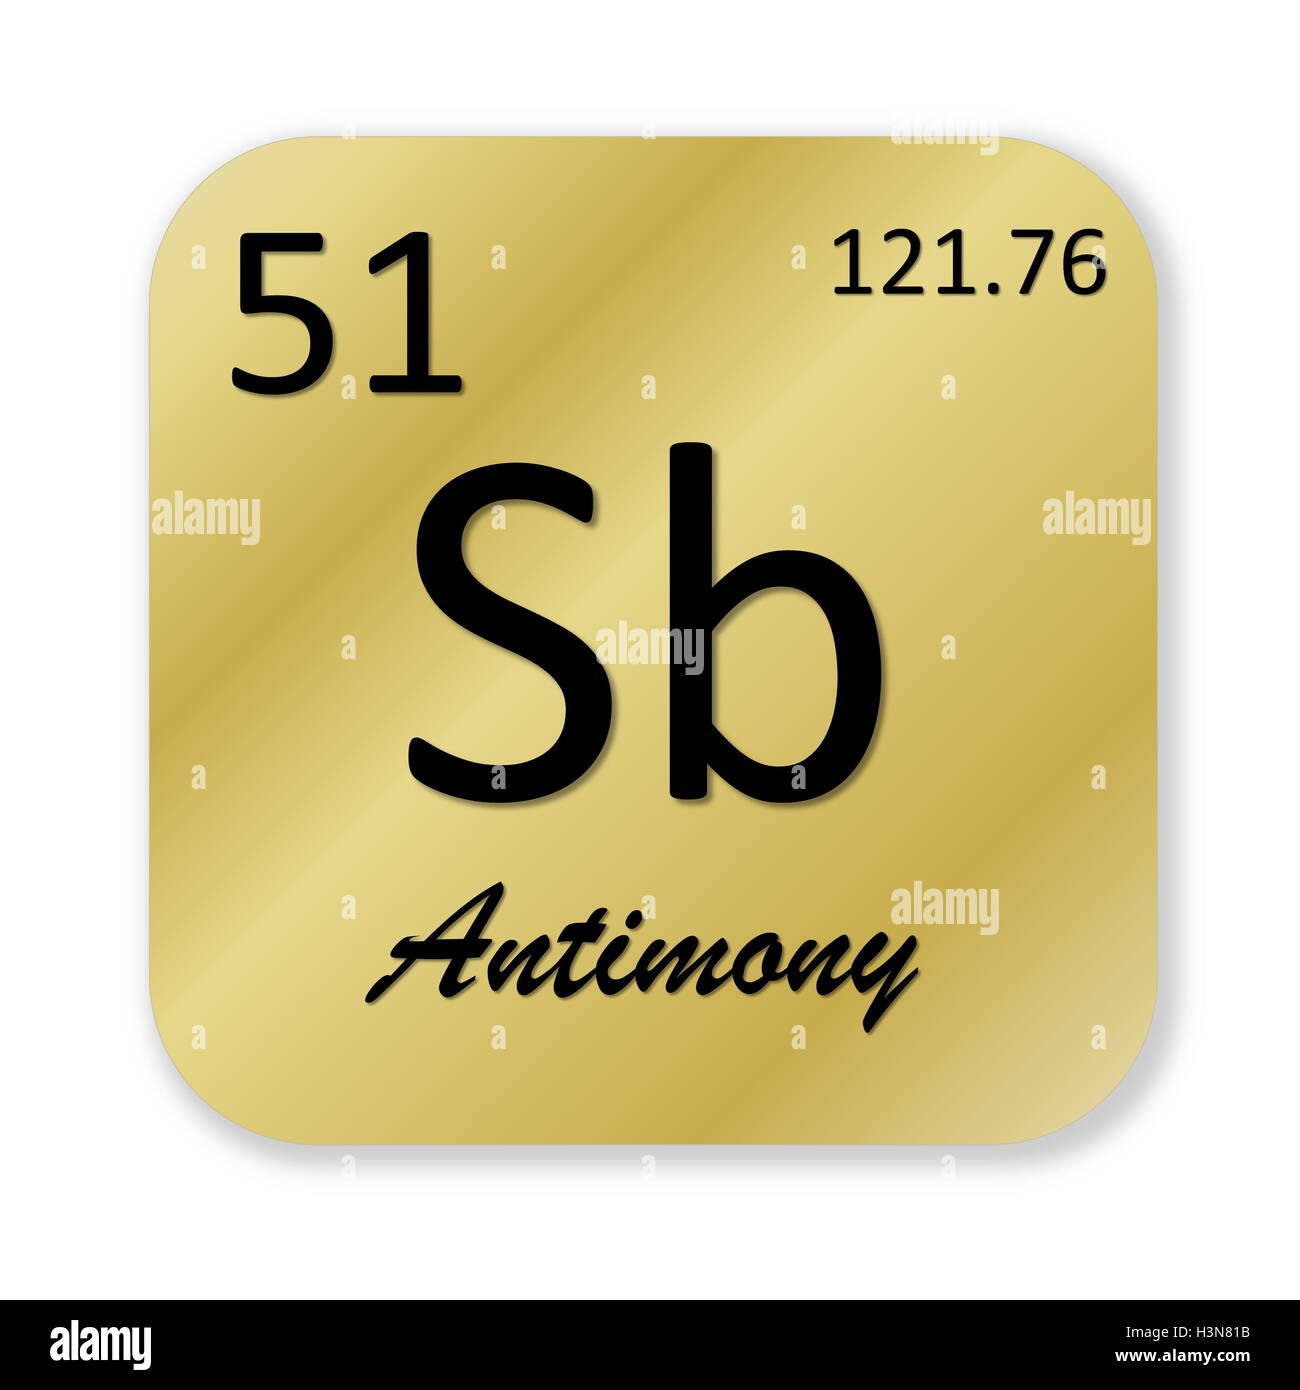 Antimony element Stock Photo